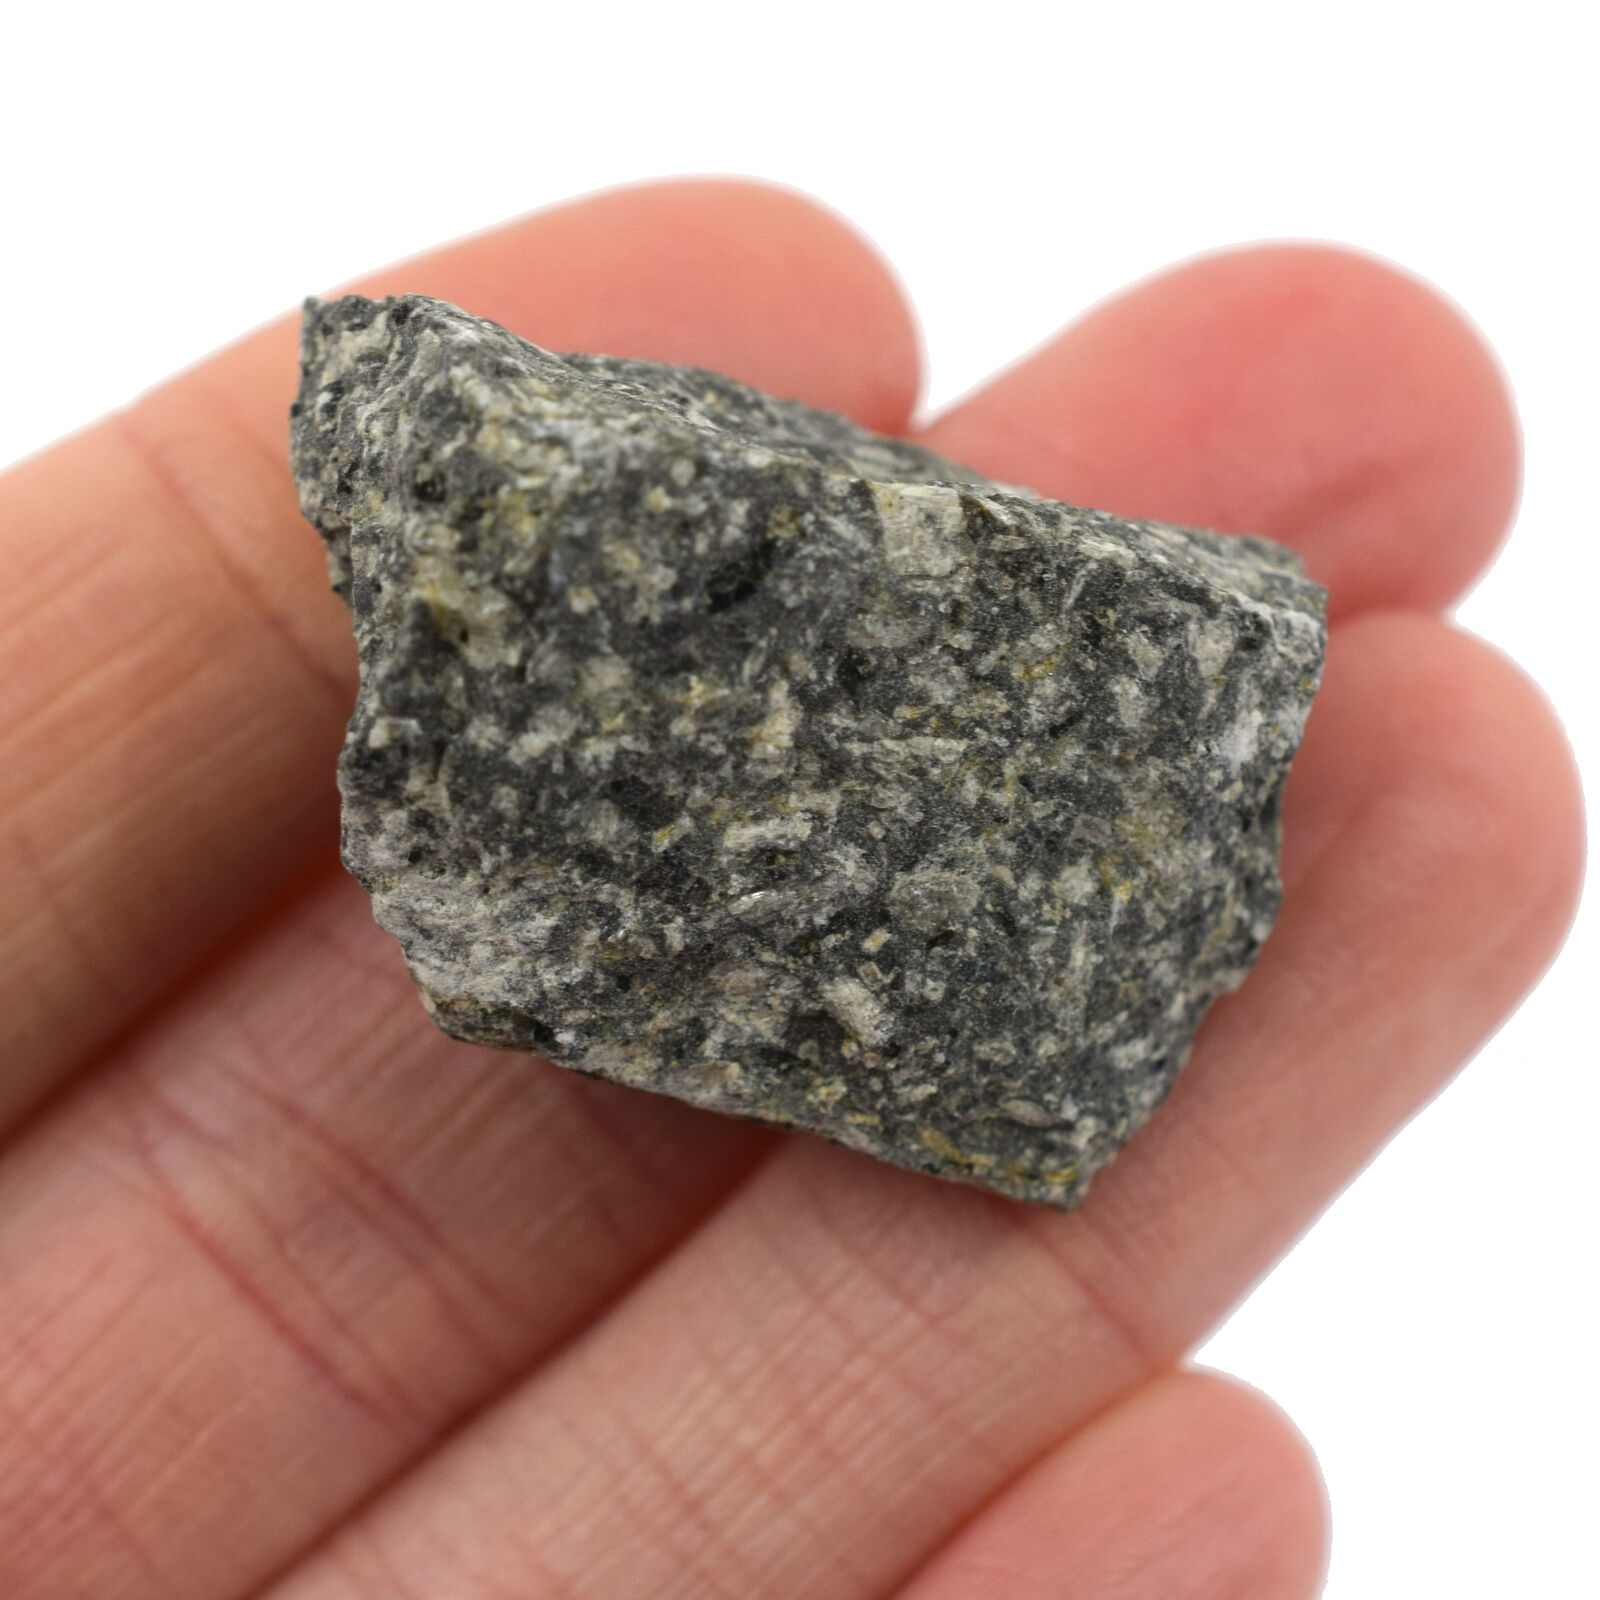 Raw Andesite Igneous Rock Specimen, 1